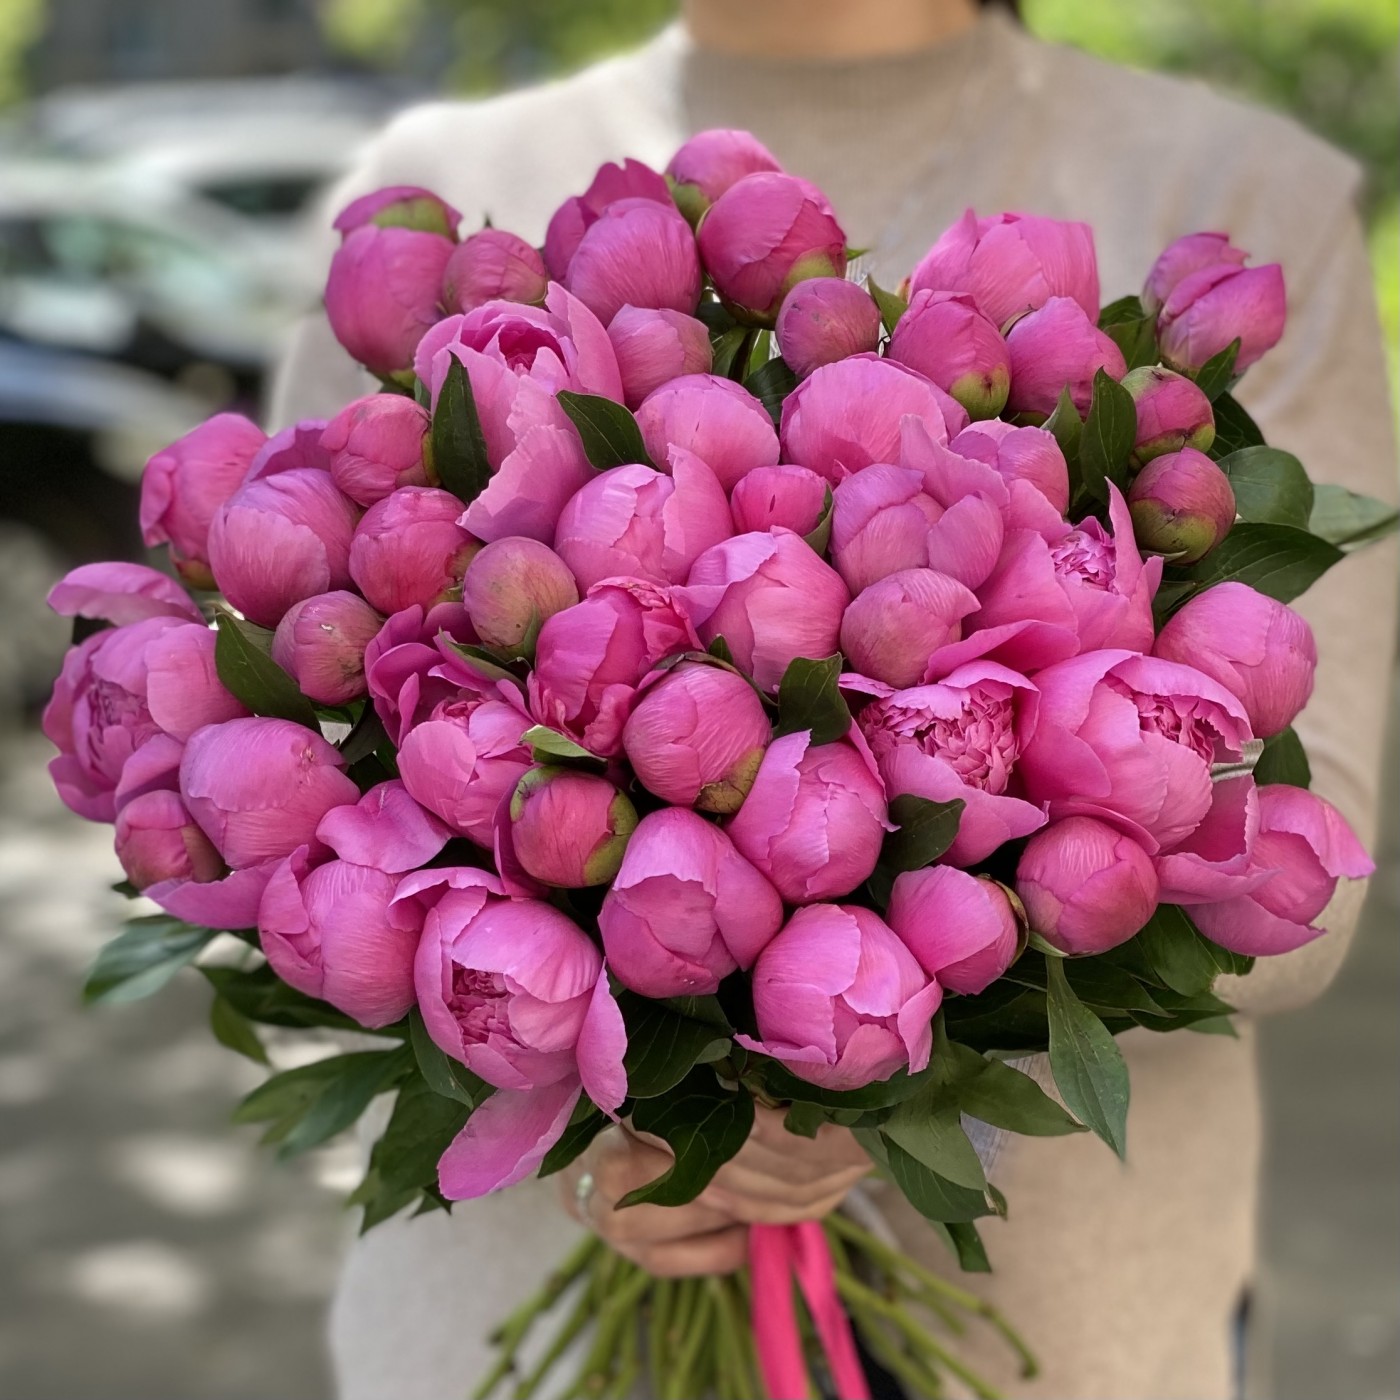 Яркие розовые пионы | купить недорого | доставка по Москве и области